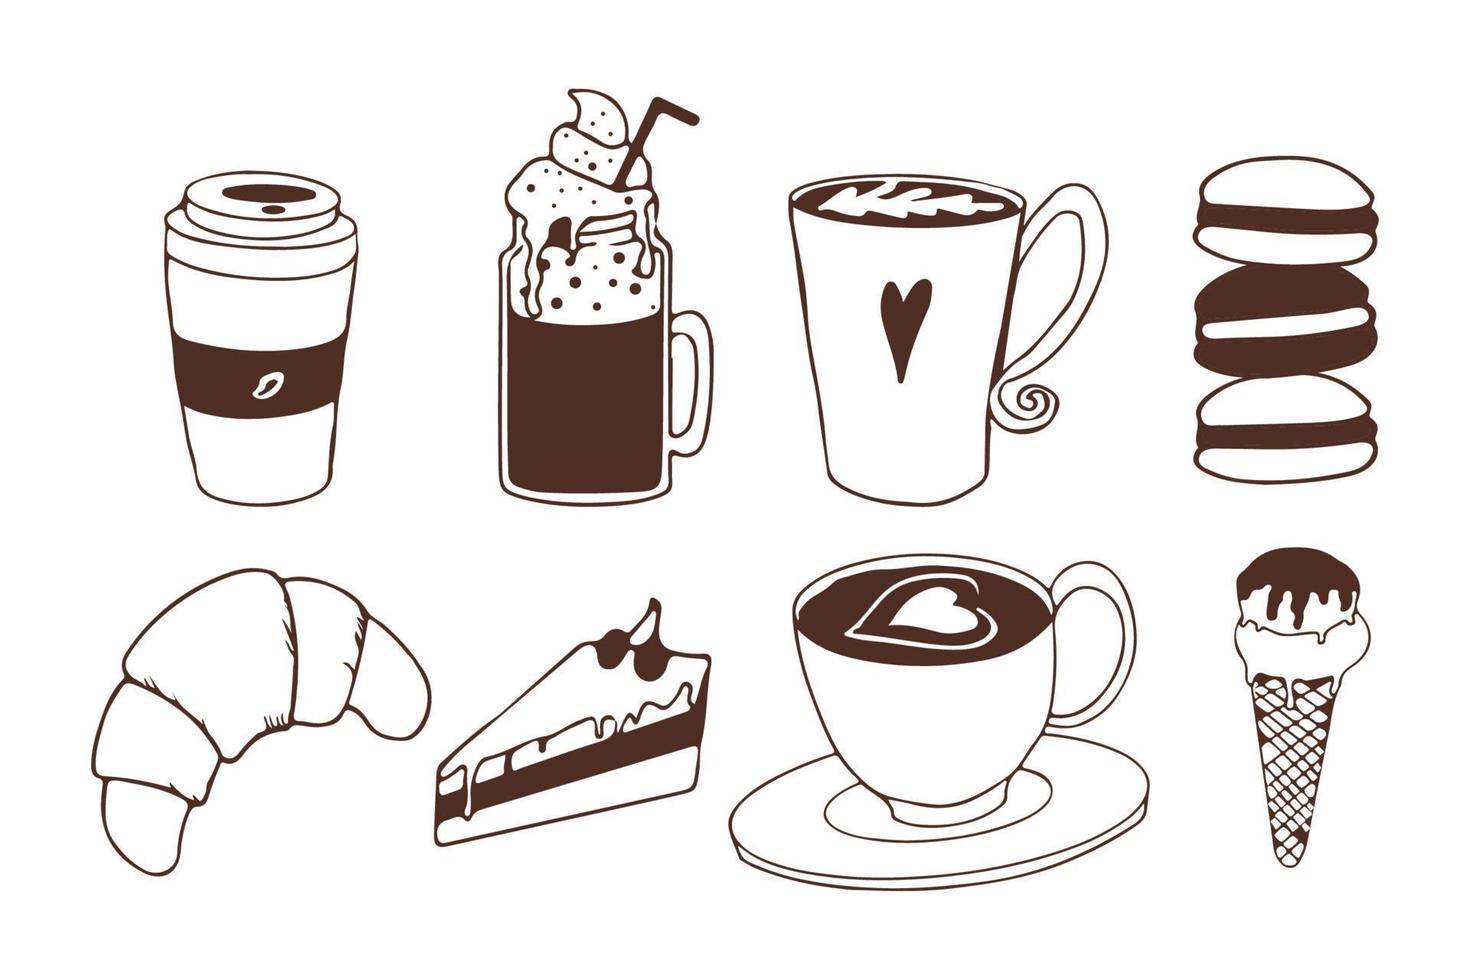 caffè e dessert in stile doodle. collezione pasticceria, gelateria, dolci e bevande. elementi di caffetteria o negozio. illustrazione vettoriale